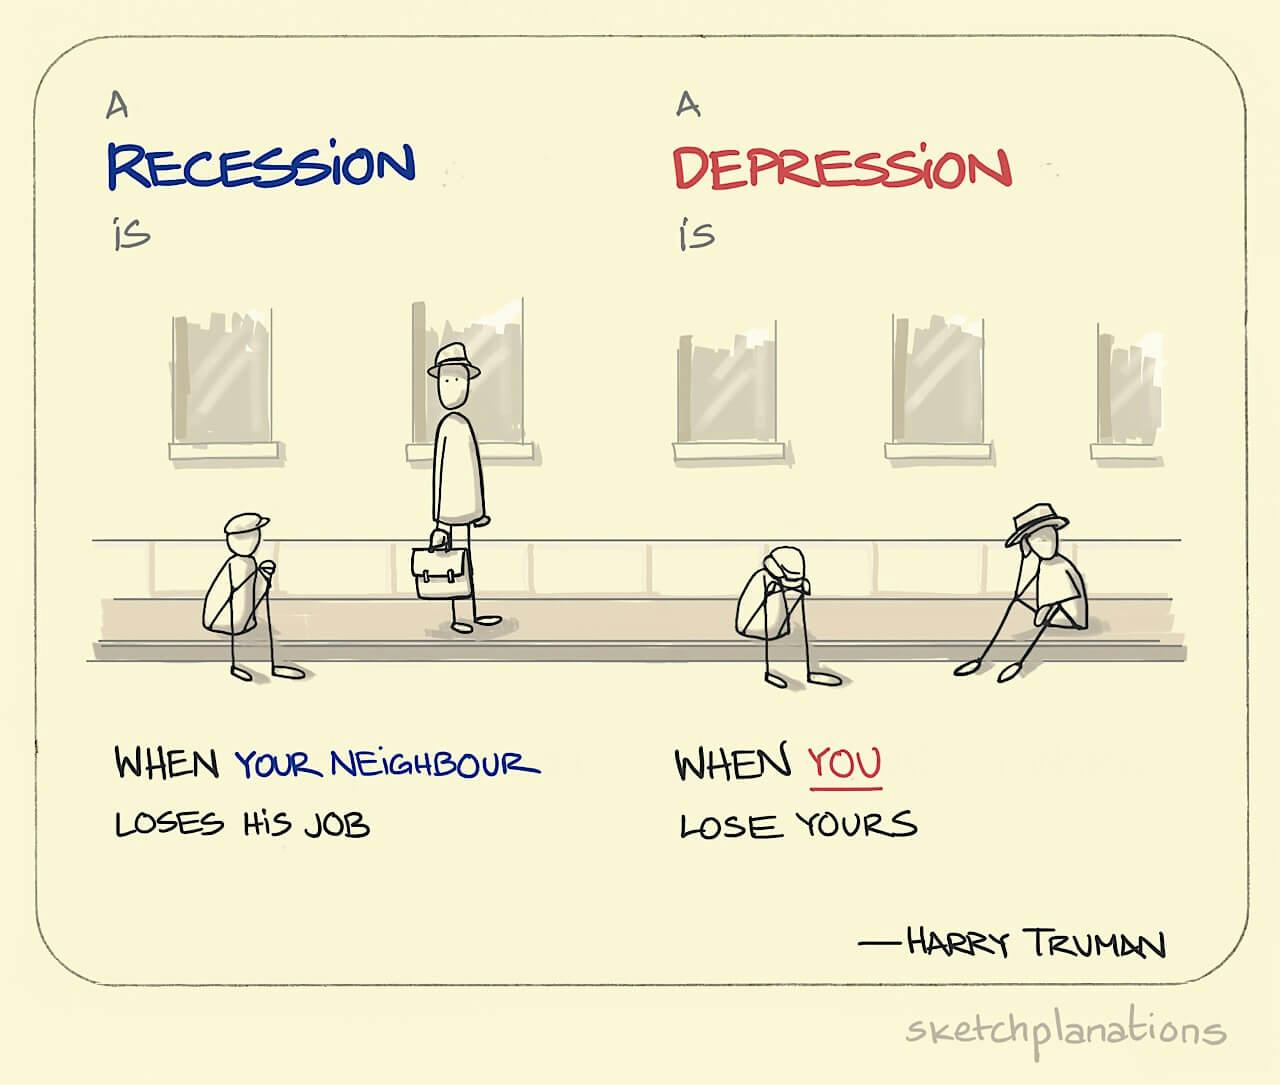 Recession vs depression - Sketchplanations